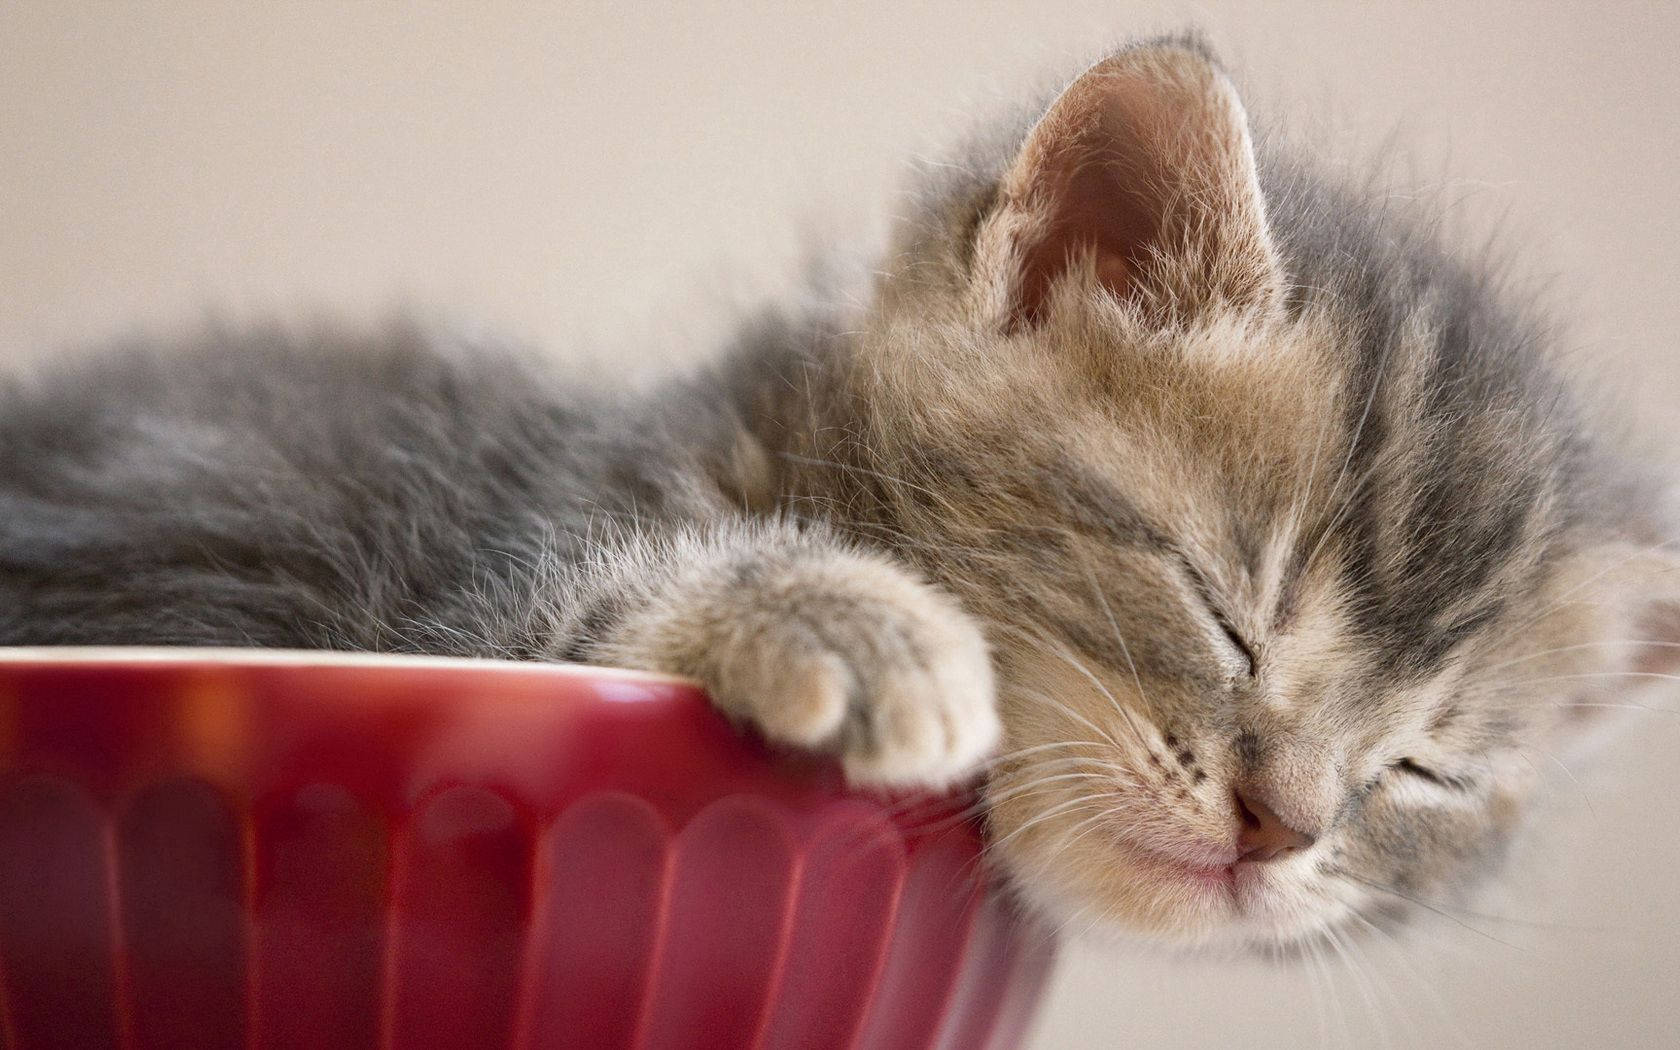 Cute Kitten Sleeping In Cup Wallpaper